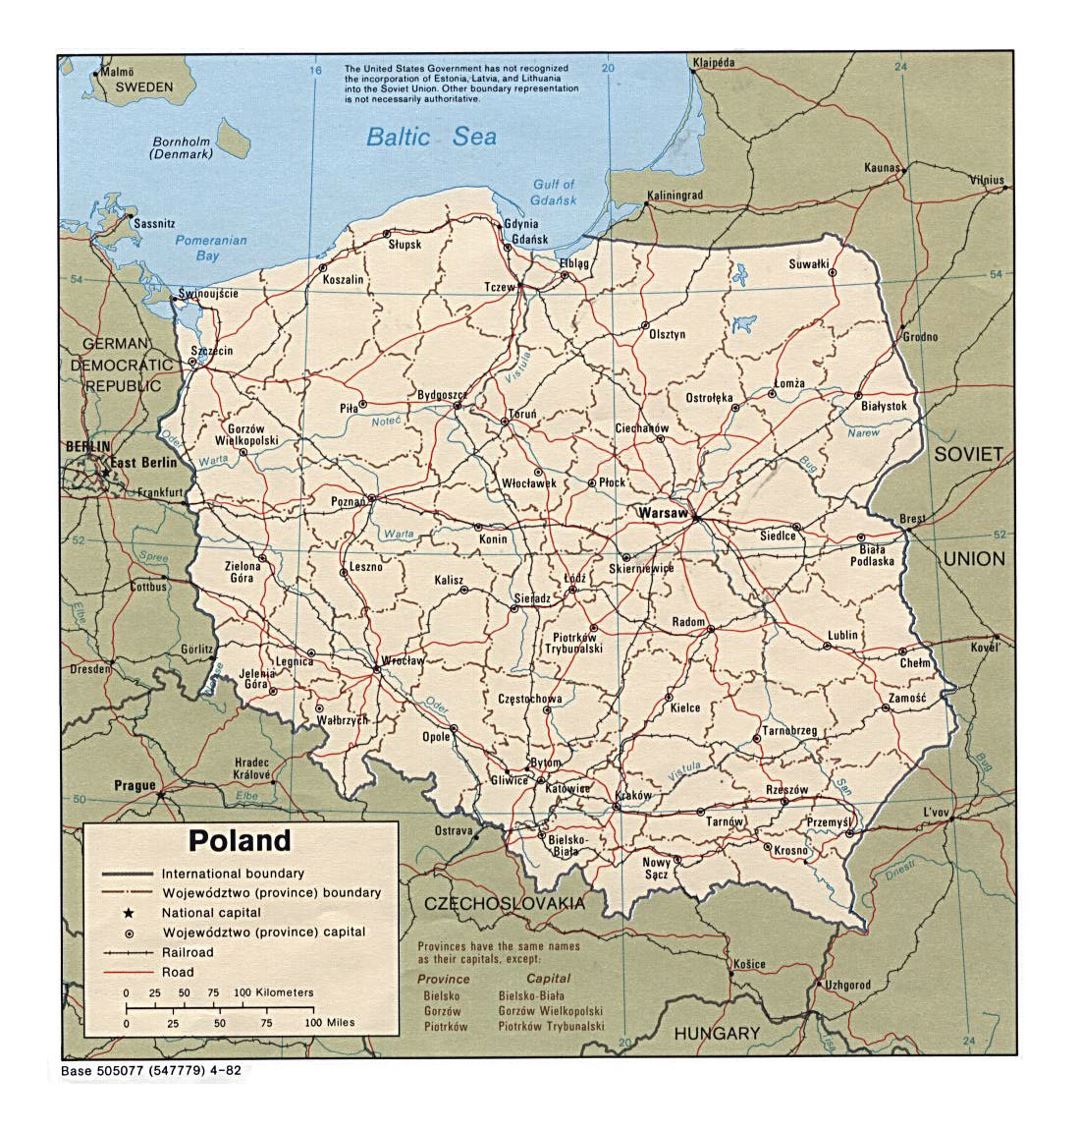 Detallado mapa político y administrativo de Polonia con carreteras, ferrocarriles y principales ciudades - 1982